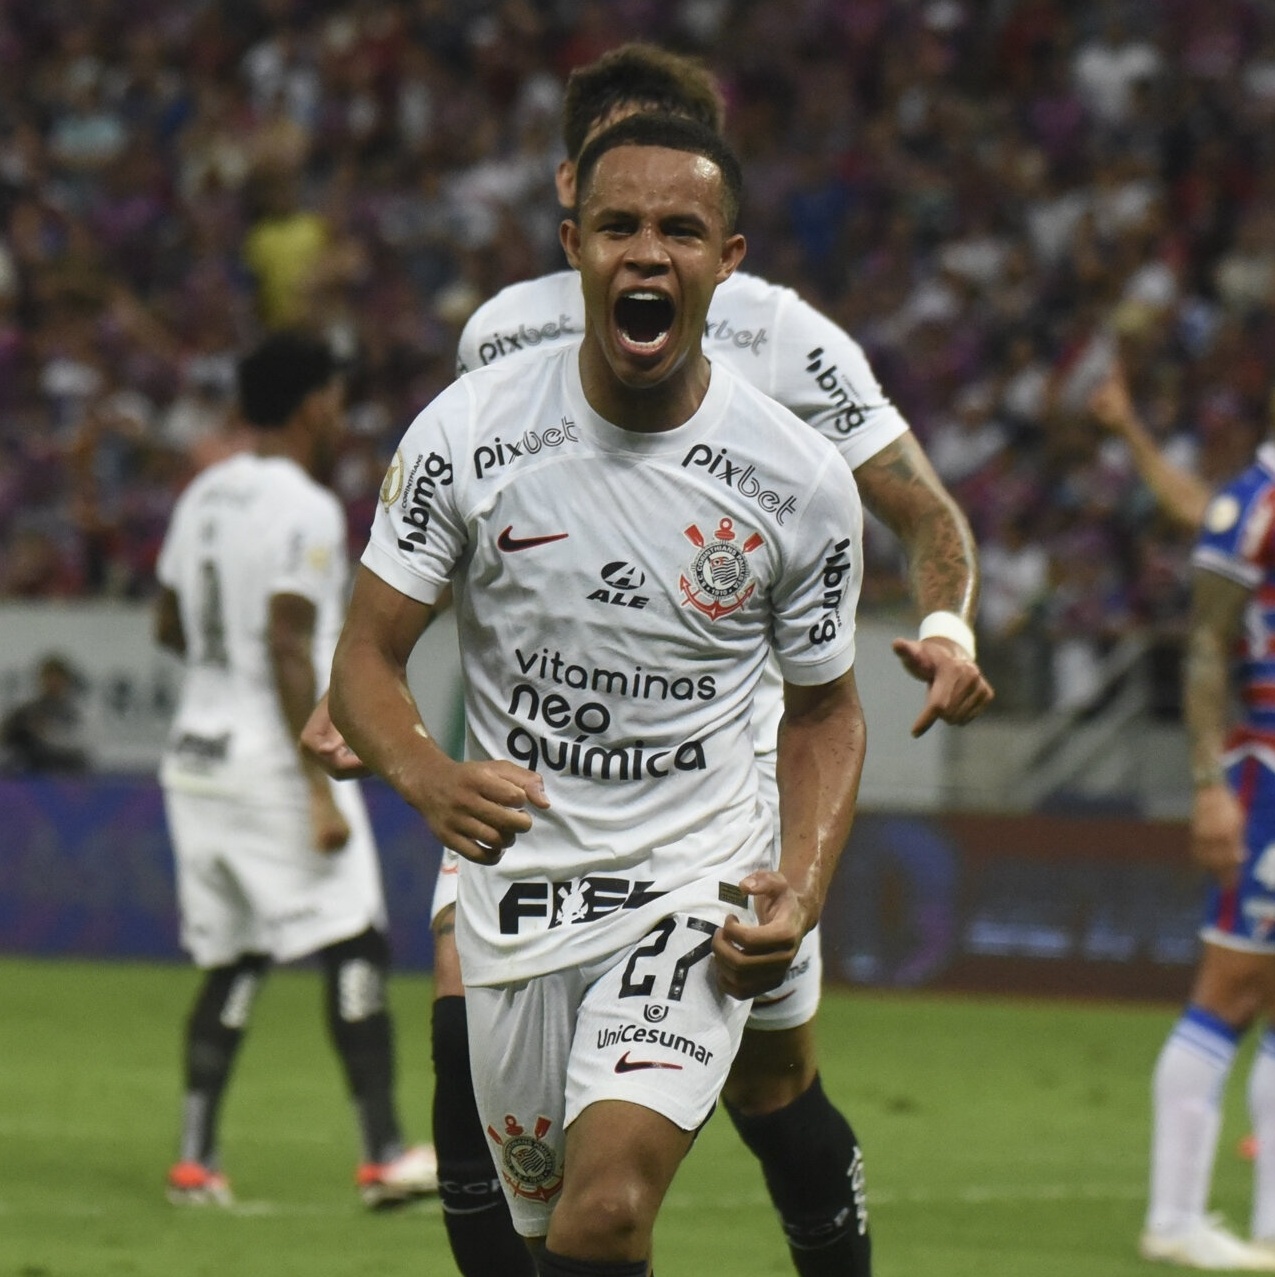 Campeão mundial sub-17, Corinthians tem apenas um atleta convocado